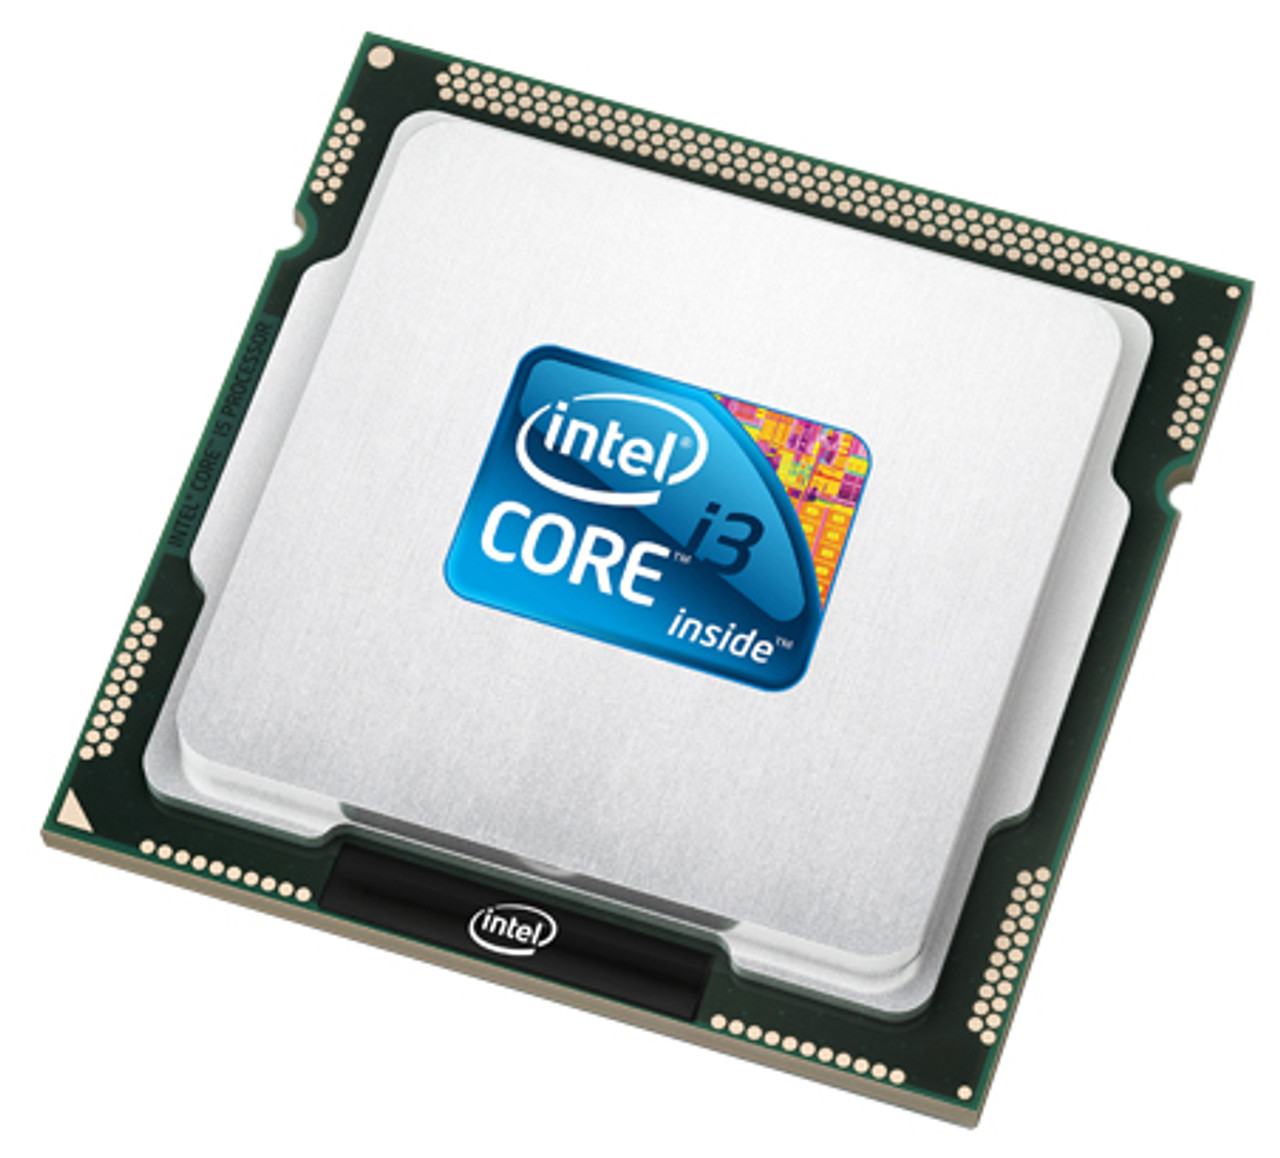 i3-2375M Intel Core i3 Dual Core 1.50GHz 5.00GT/s DMI 3MB L3 Cache Mobile Processor